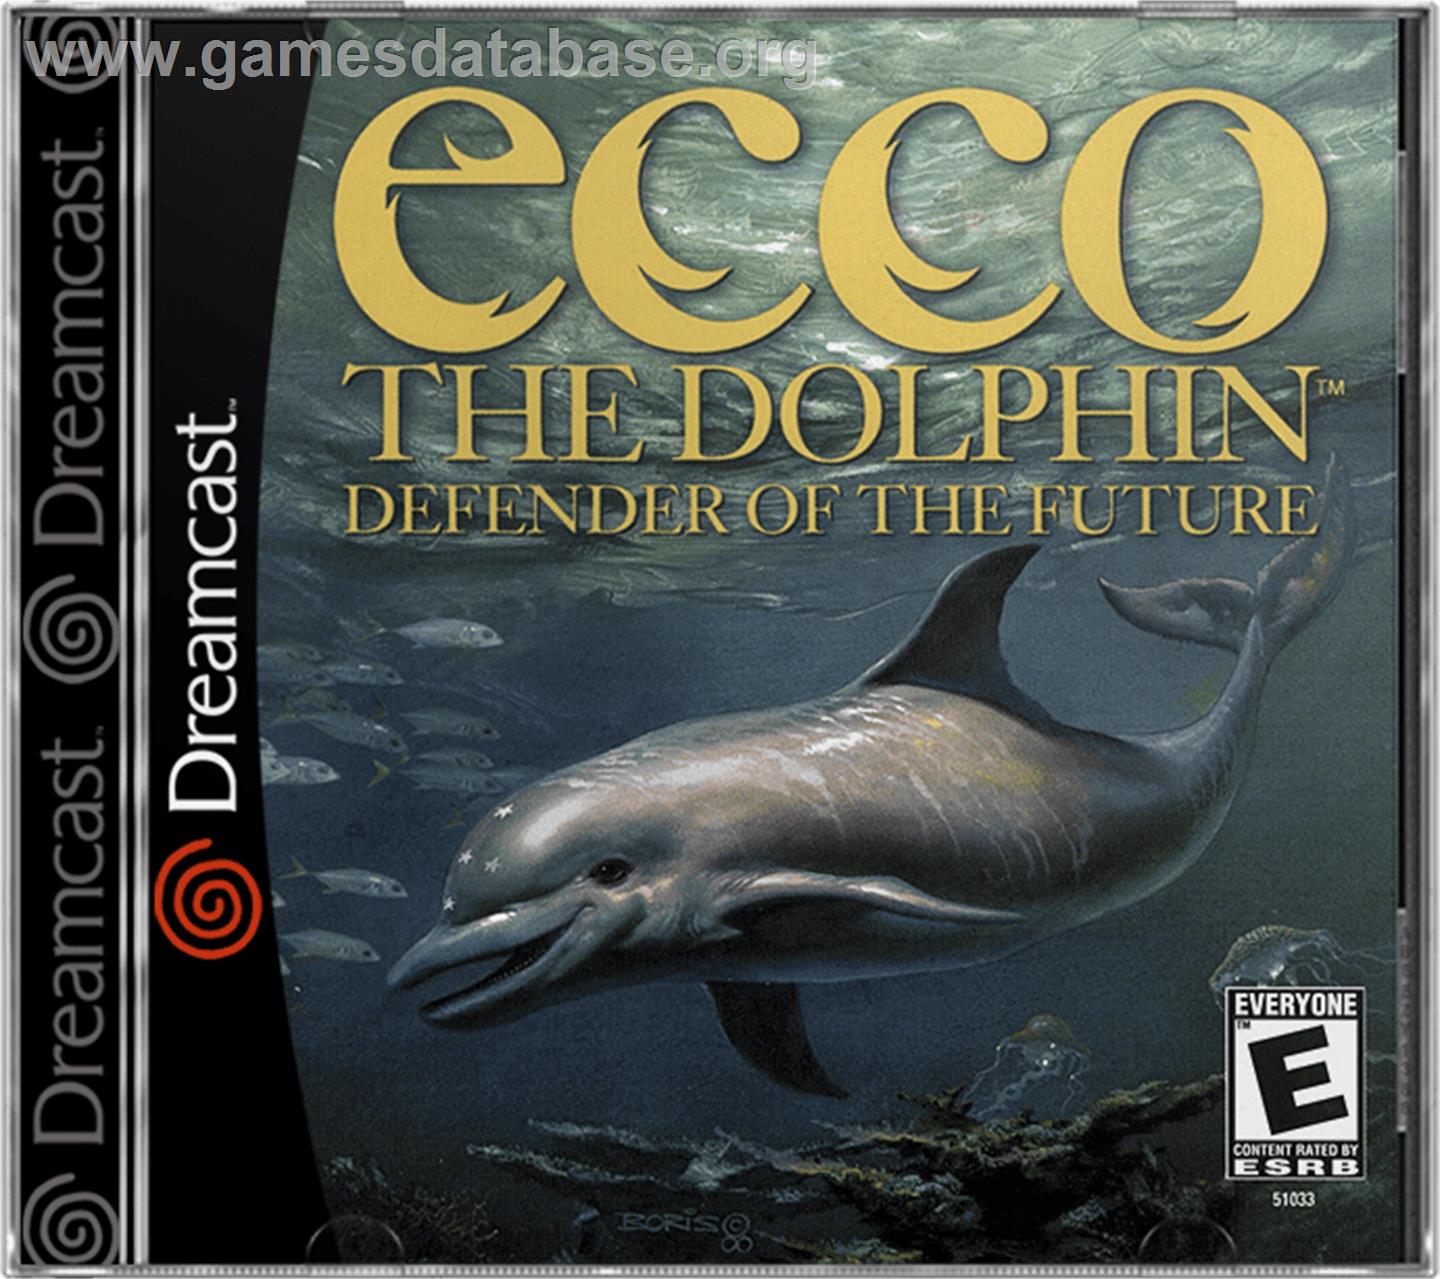 Ecco the Dolphin: Defender of the Future - Sega Dreamcast - Artwork - Box